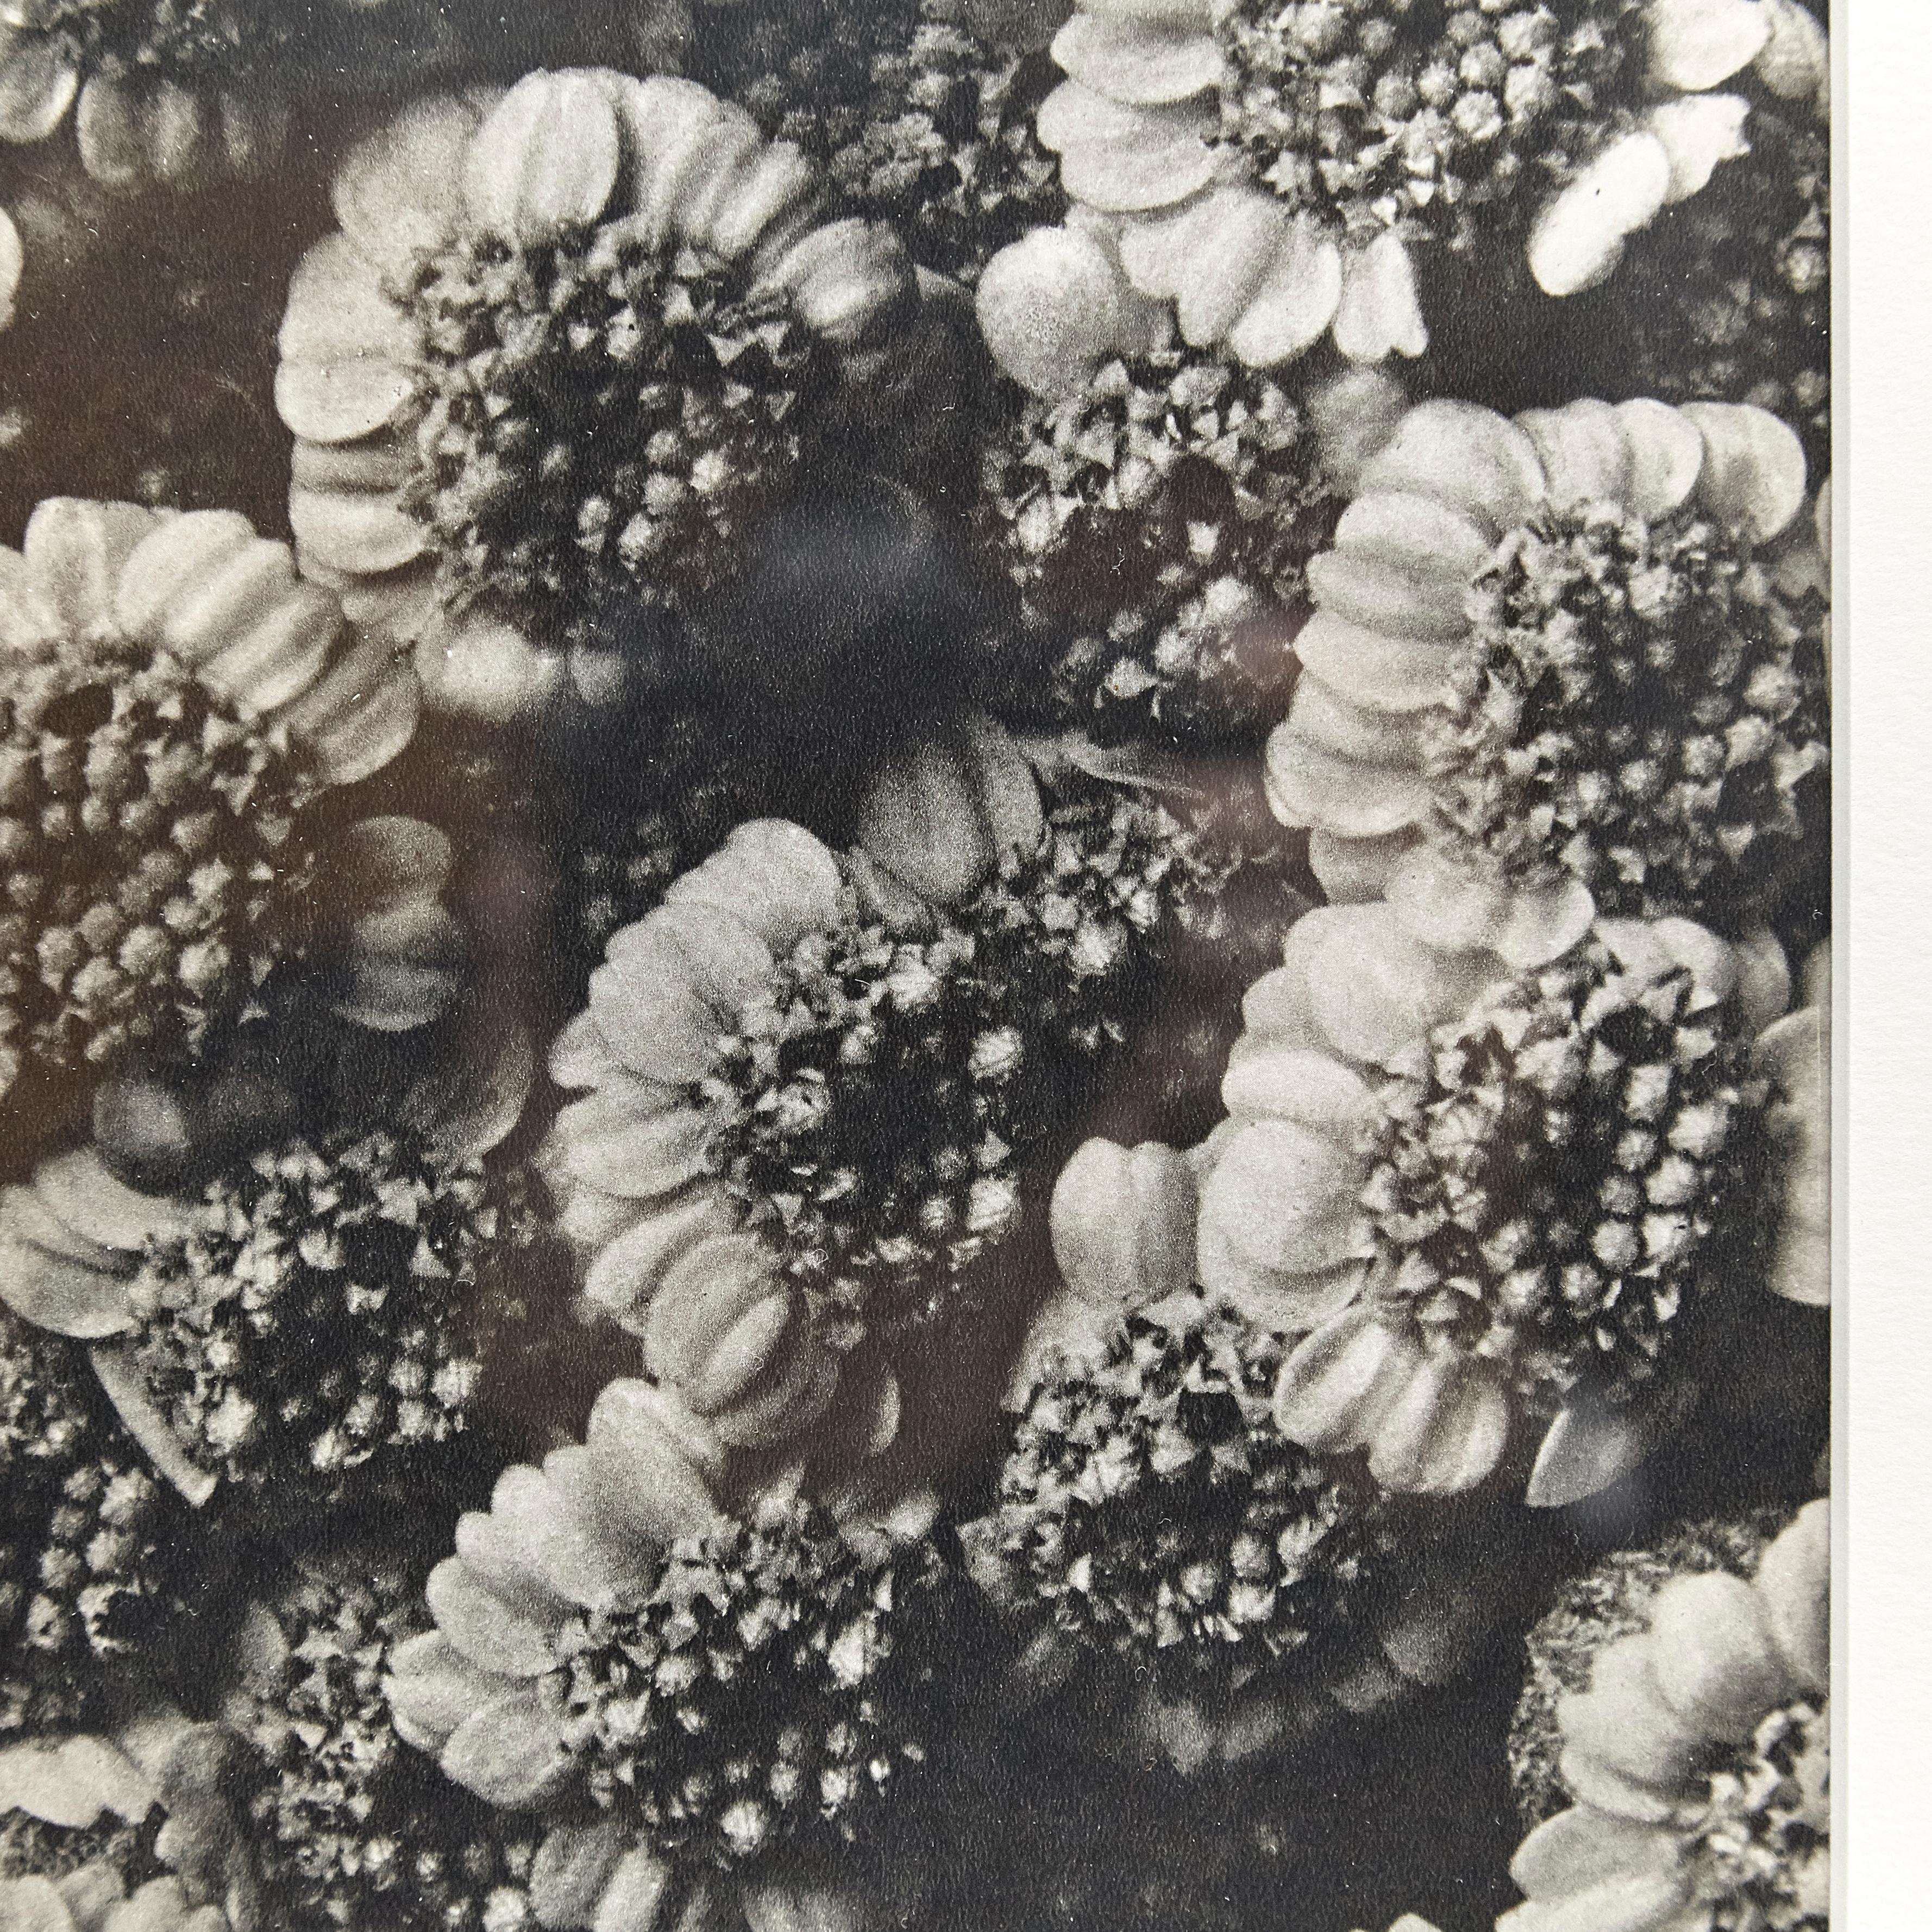 Karl Blossfeldt Black White Flower Photogravure Botanic Photography, 1942 For Sale 5